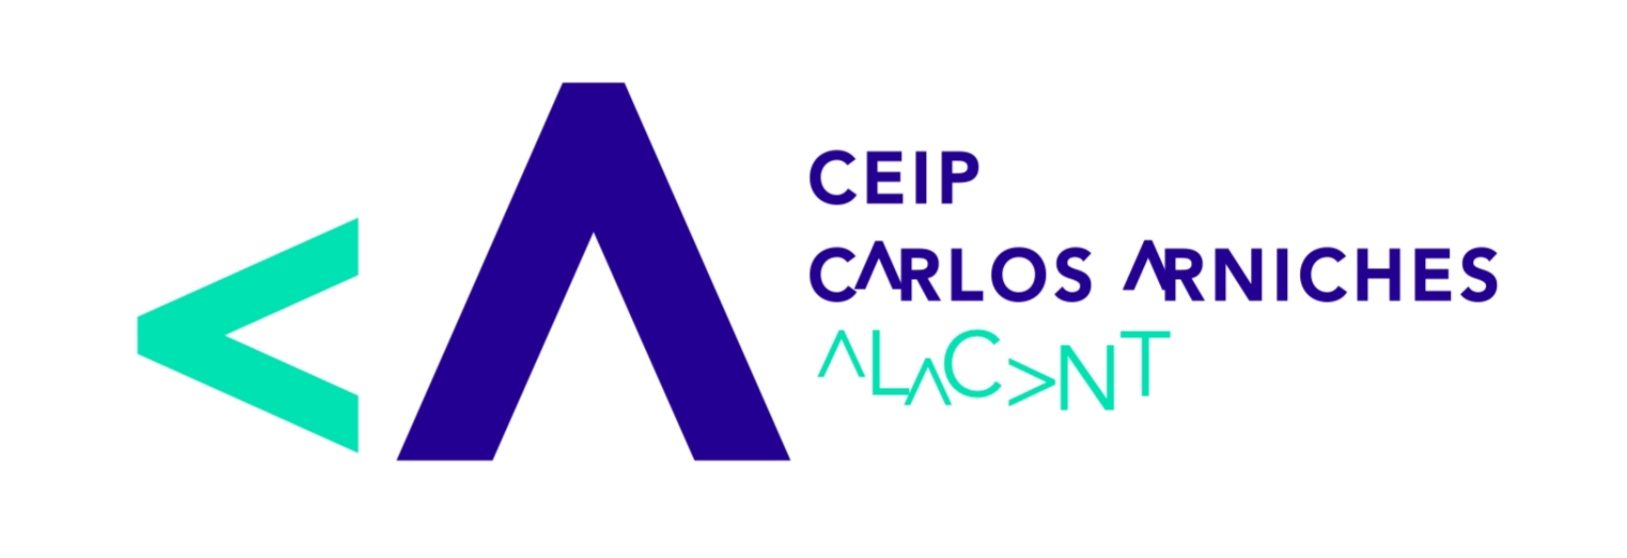 Logo CEIP CARLOS ARNICHES